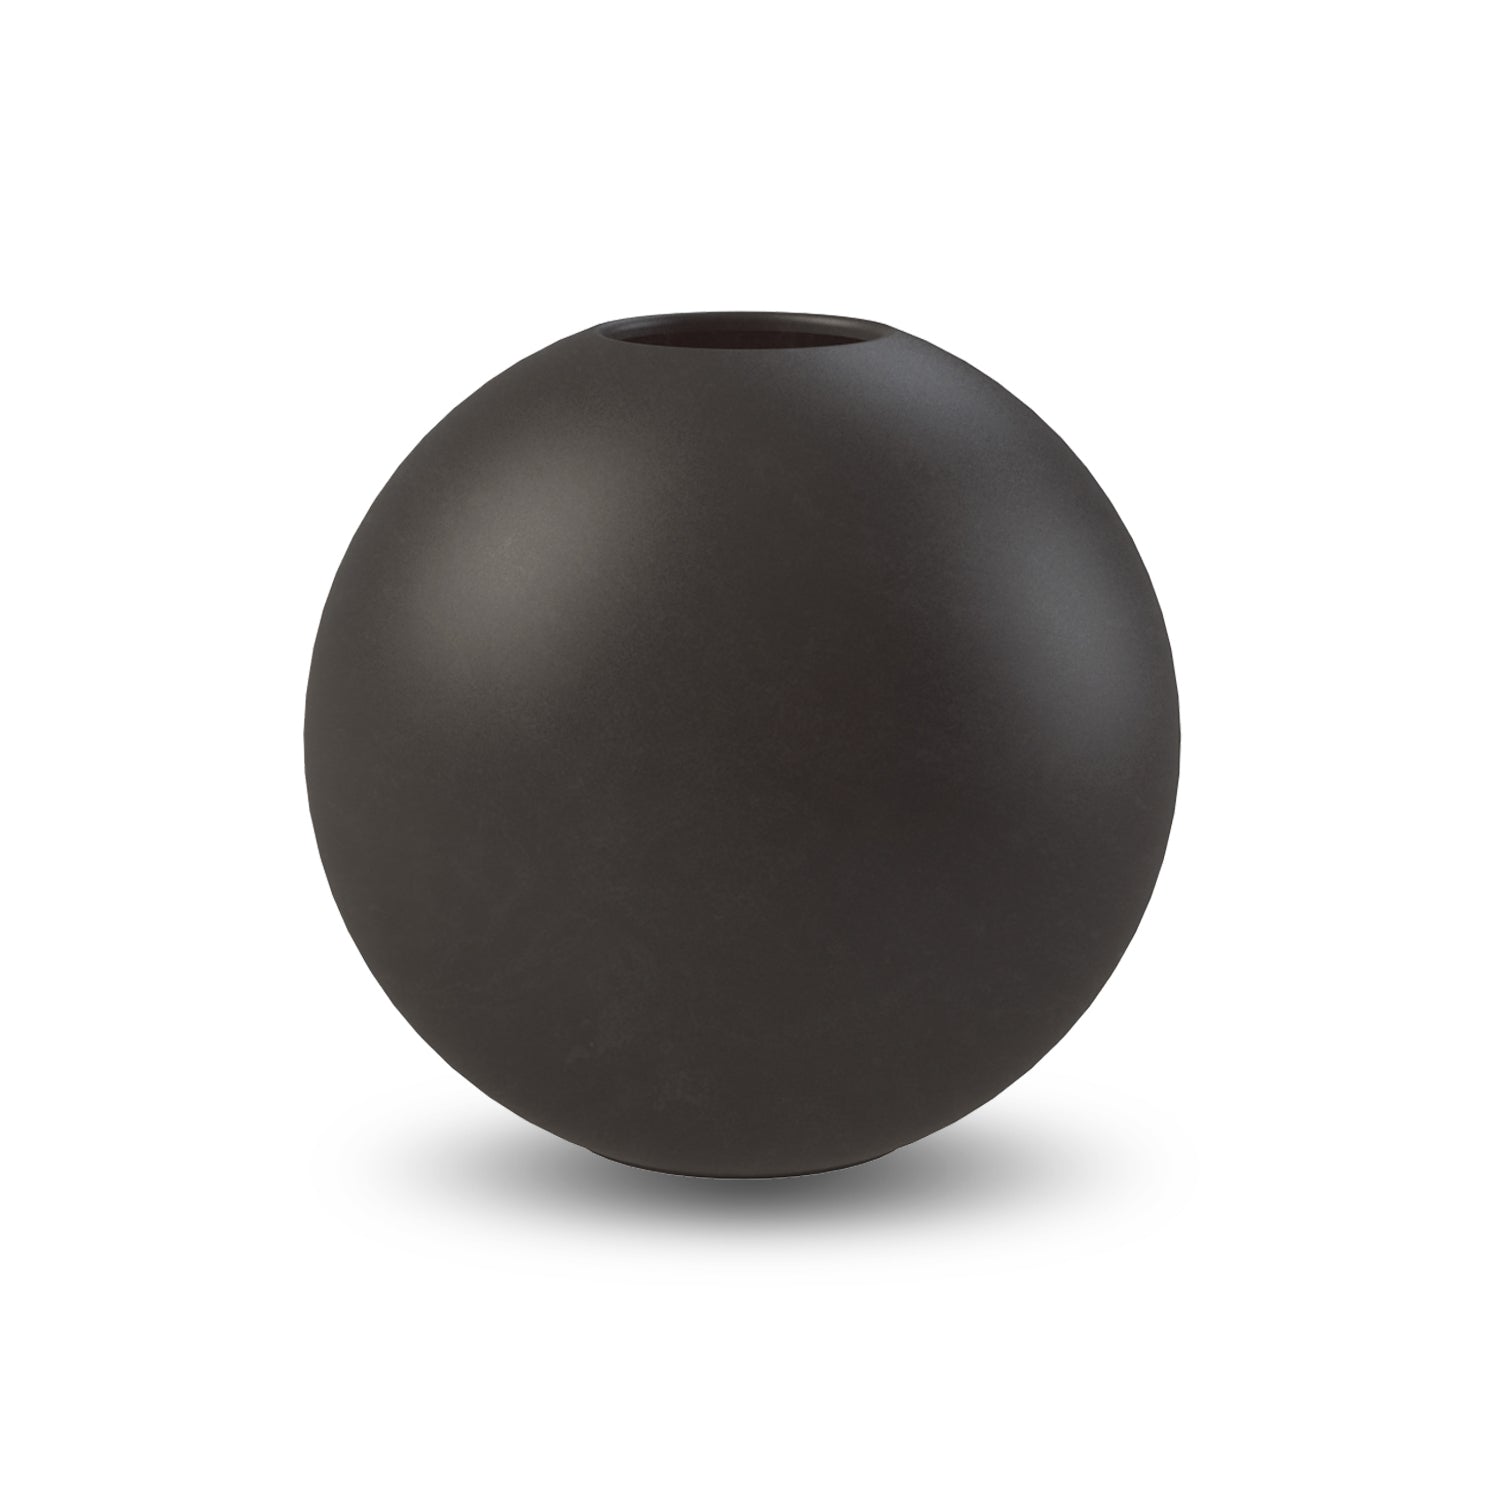 Billede af Cooee Design Ball vase Black, 20 cm